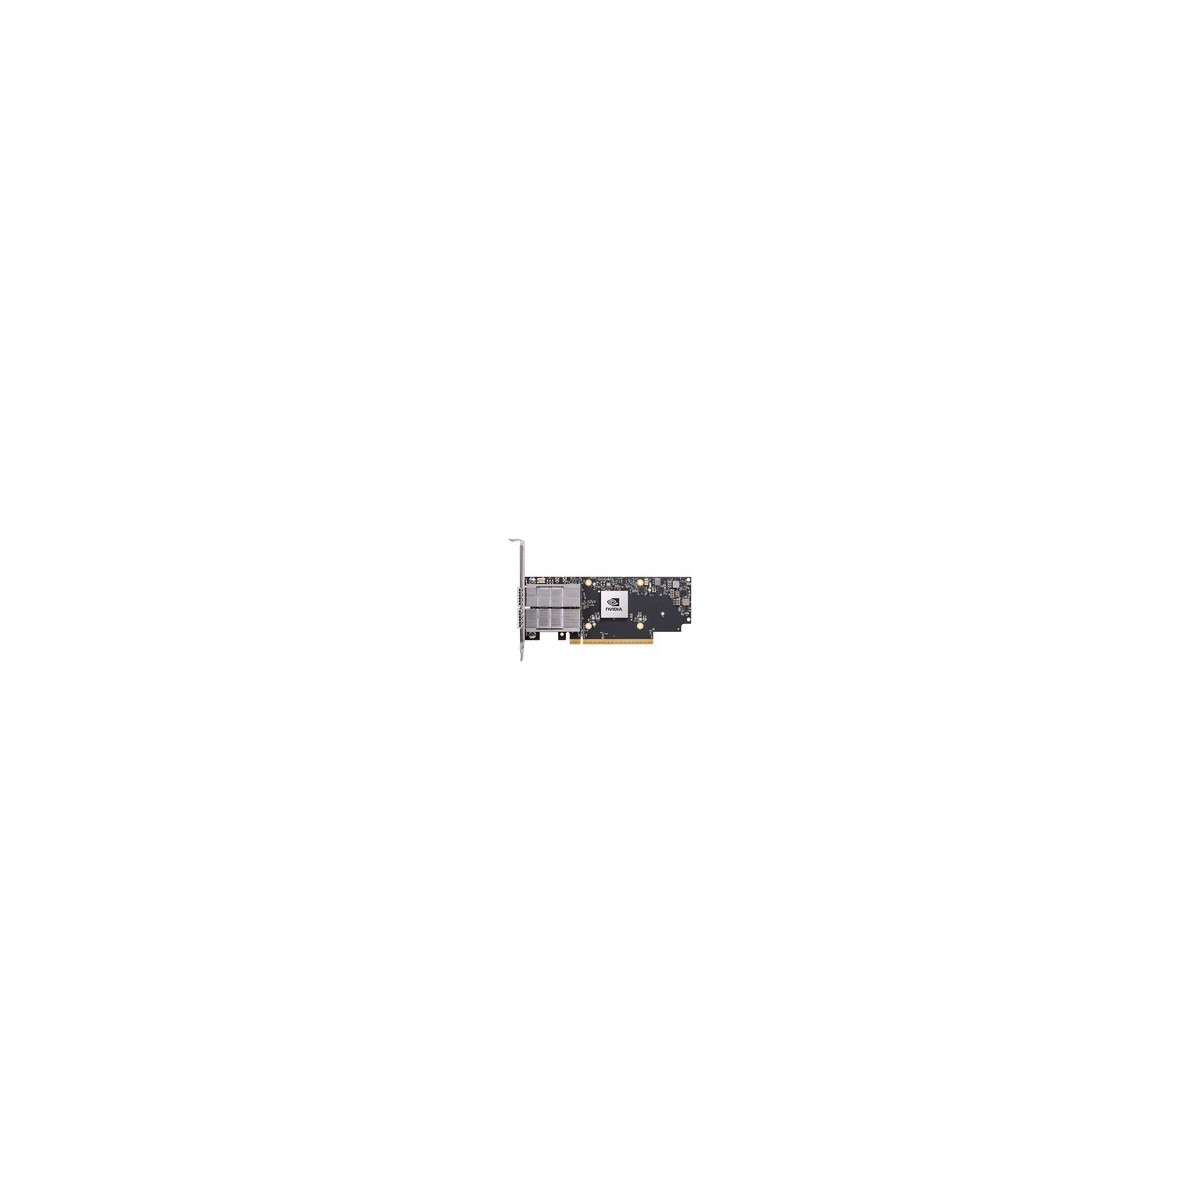 NVIDIA ConnectX-7 adapter card 400Gb-s NDR IB